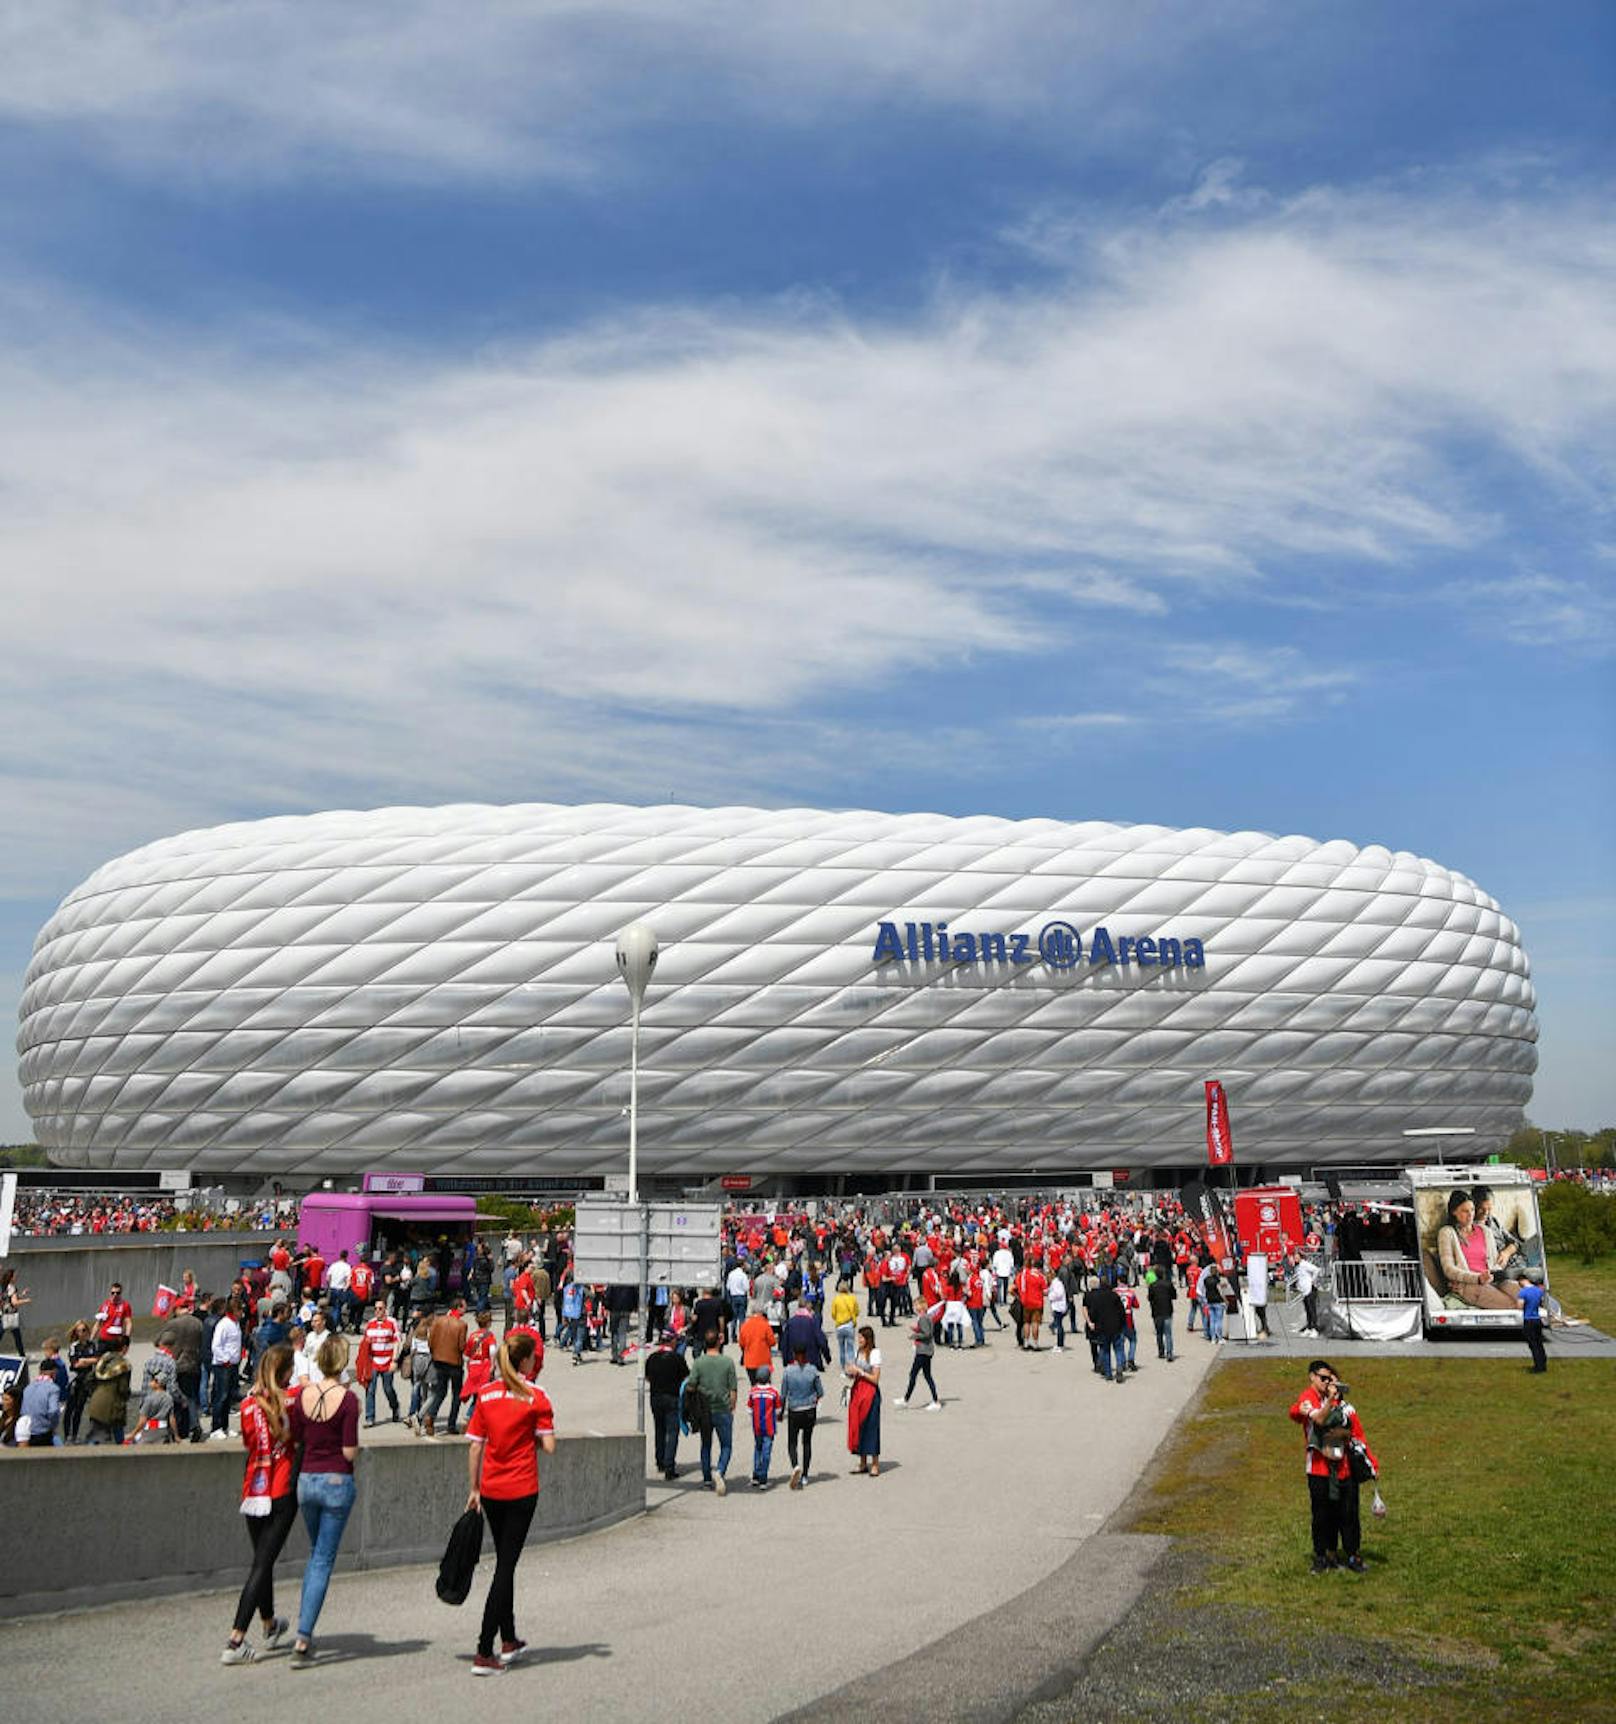 Die Münchner Allianz Arena fasst 75.000 Zuschauer. In der "Heimat" von David Alaba wird bereits bei der EM 2020, die über ganz Europa verstreut stattfindet, gespielt.